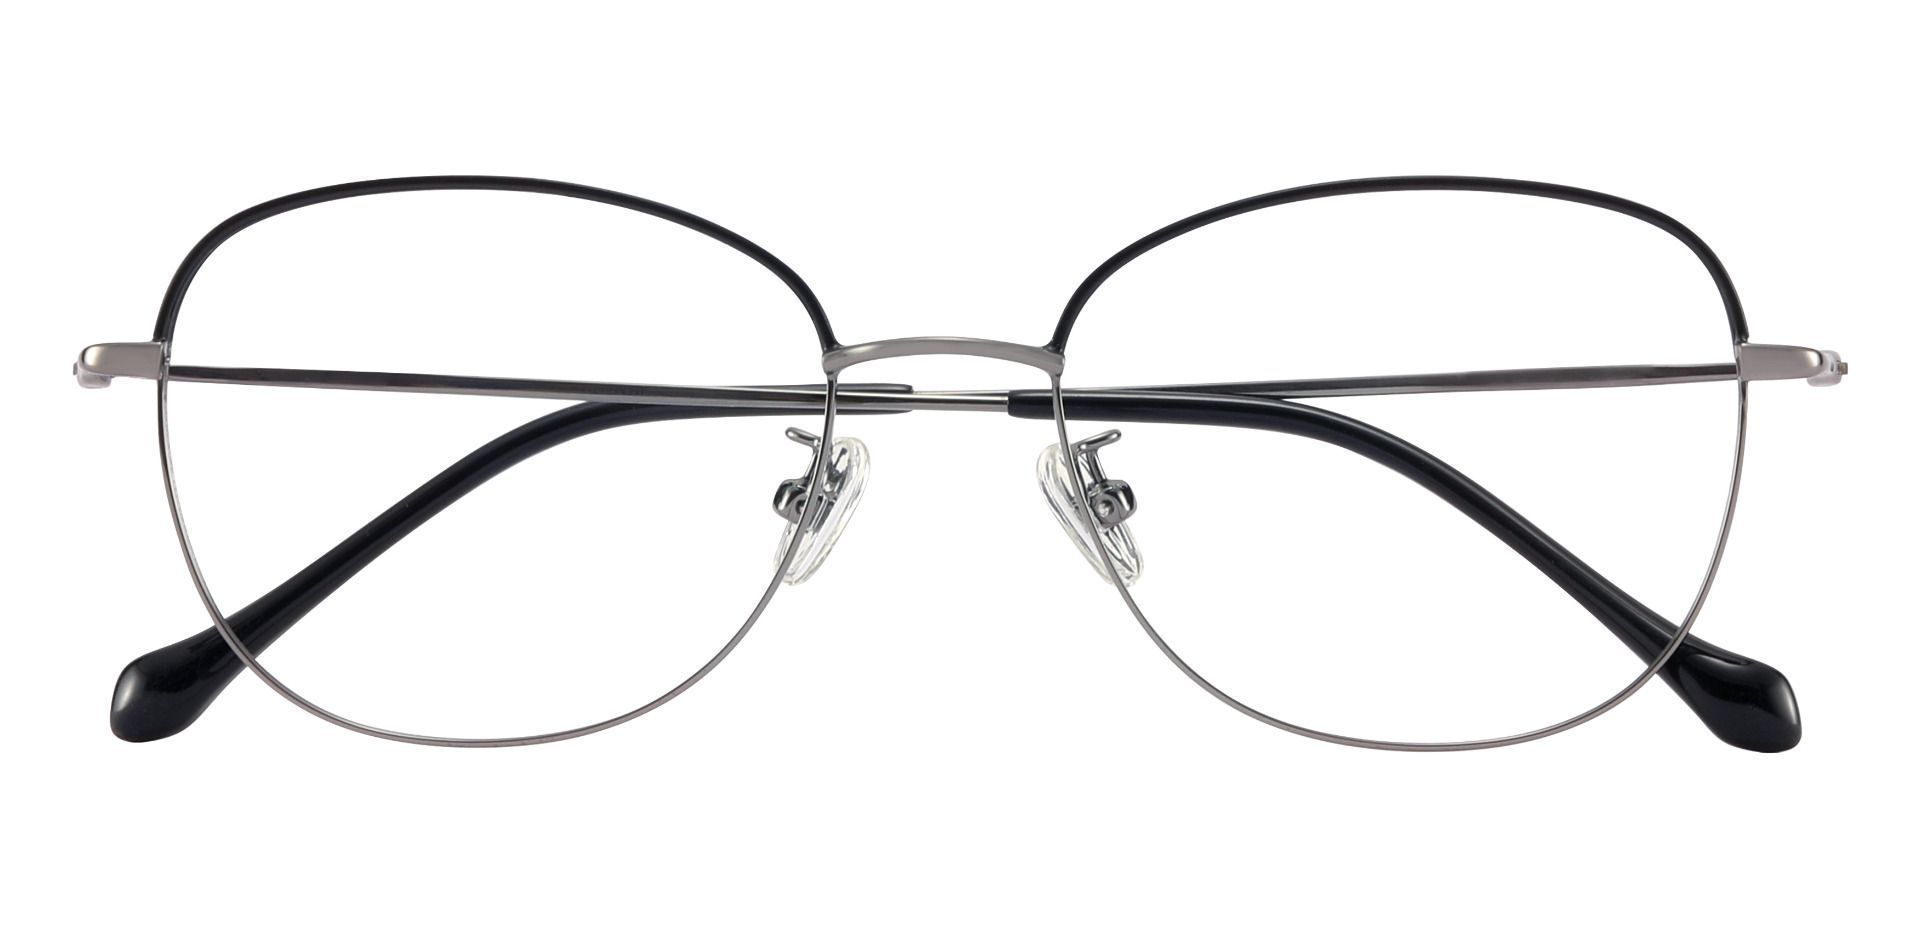 Belcourt Oval Reading Glasses - Black